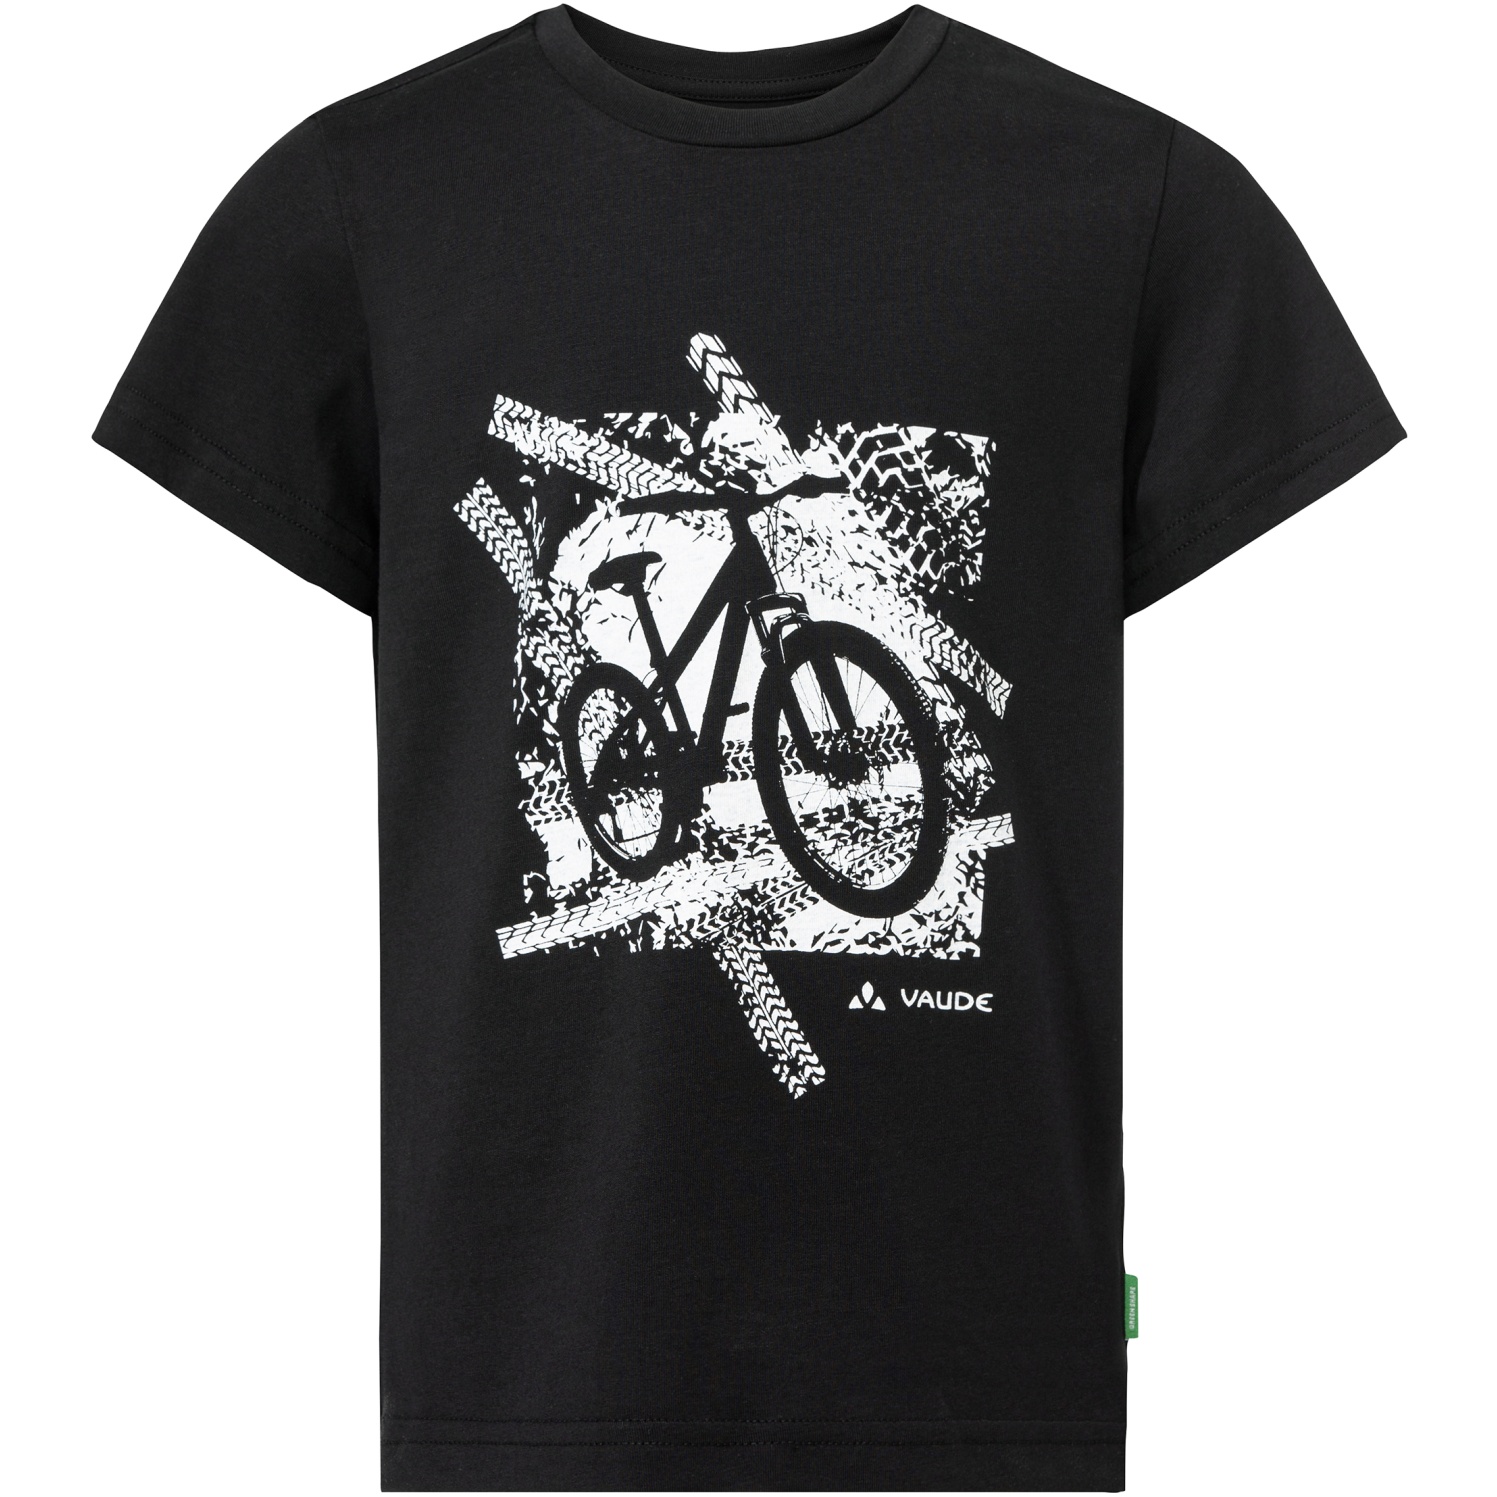 Produktbild von Vaude Lezza T-Shirt Kinder - black/white